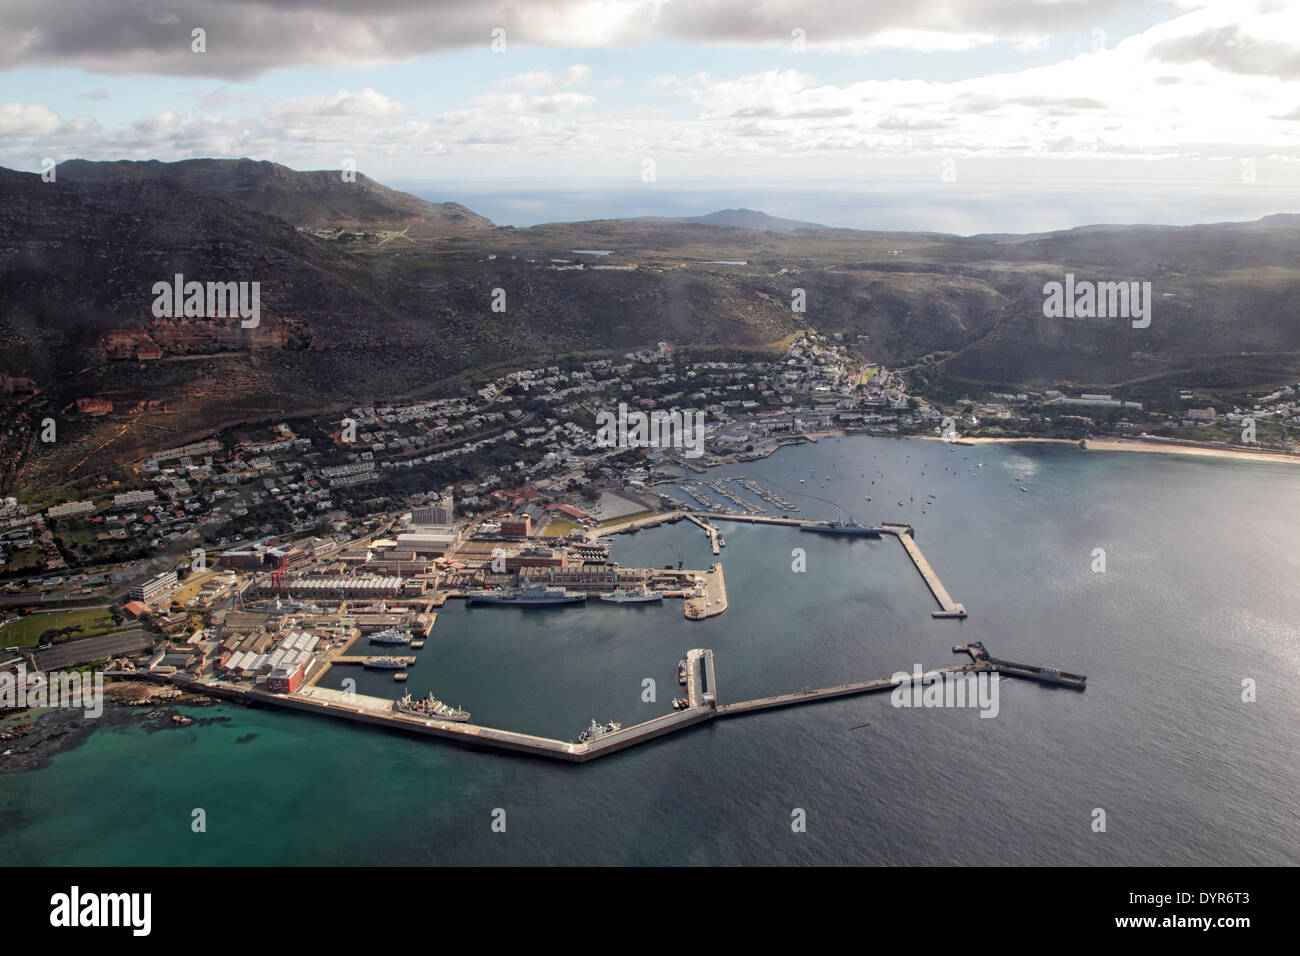 Vista aerea della città di Simons sulla Penisola del Capo vicino a Cape Town, Sud Africa. Foto Stock